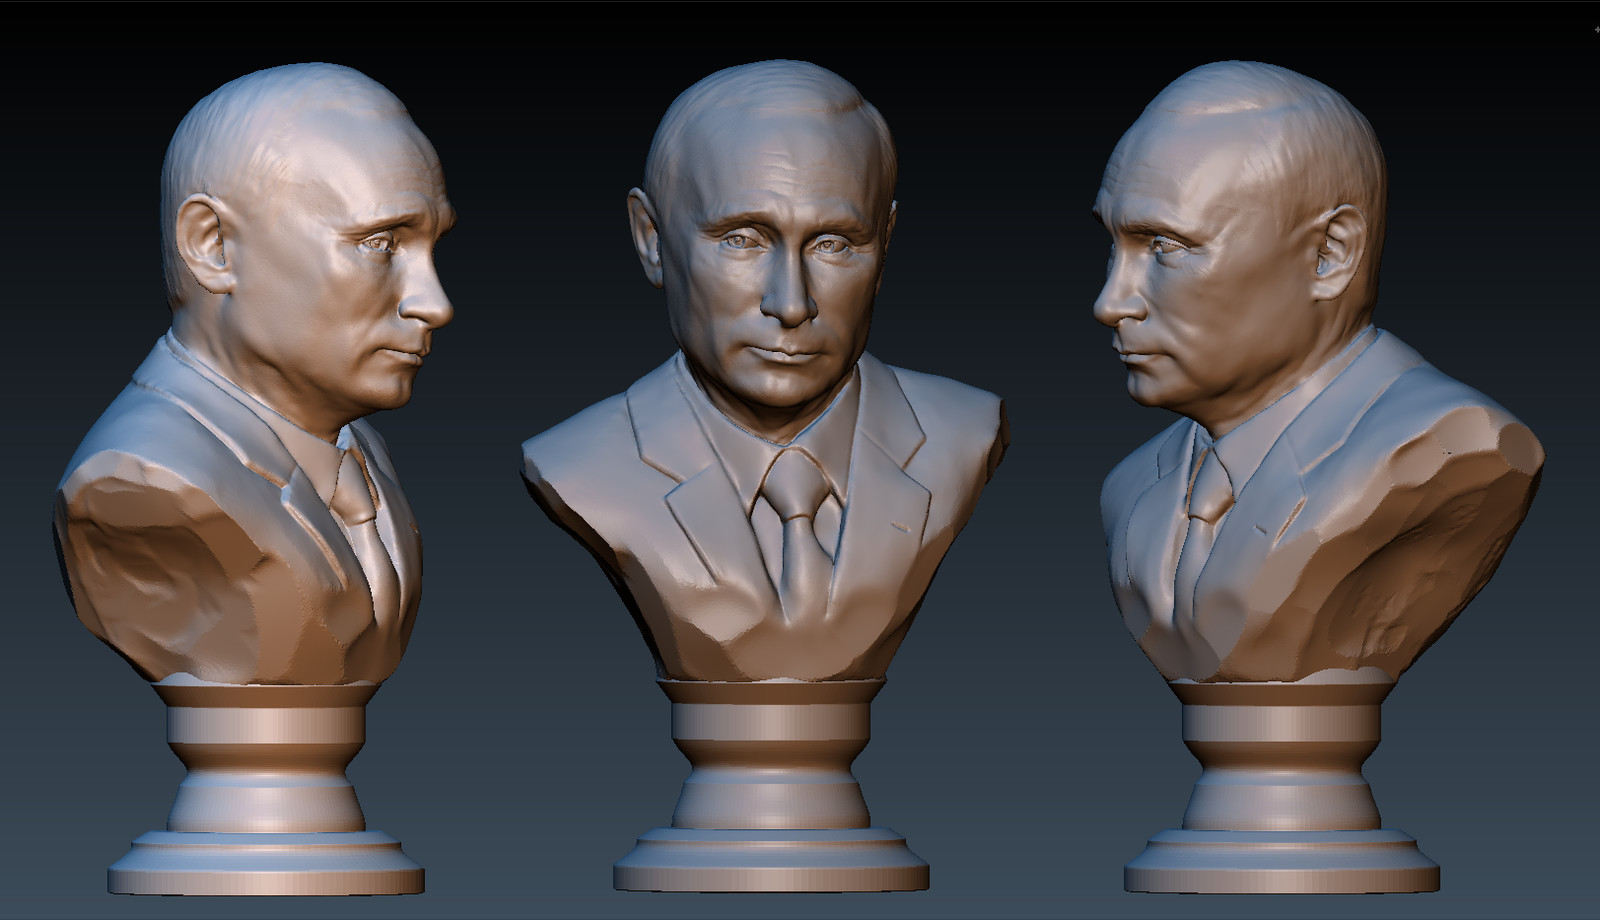 Сайт 3 д моделей. 3д бюст Путина в стдель. 3д модель Путина. Бюст Путина 3d модель STL.